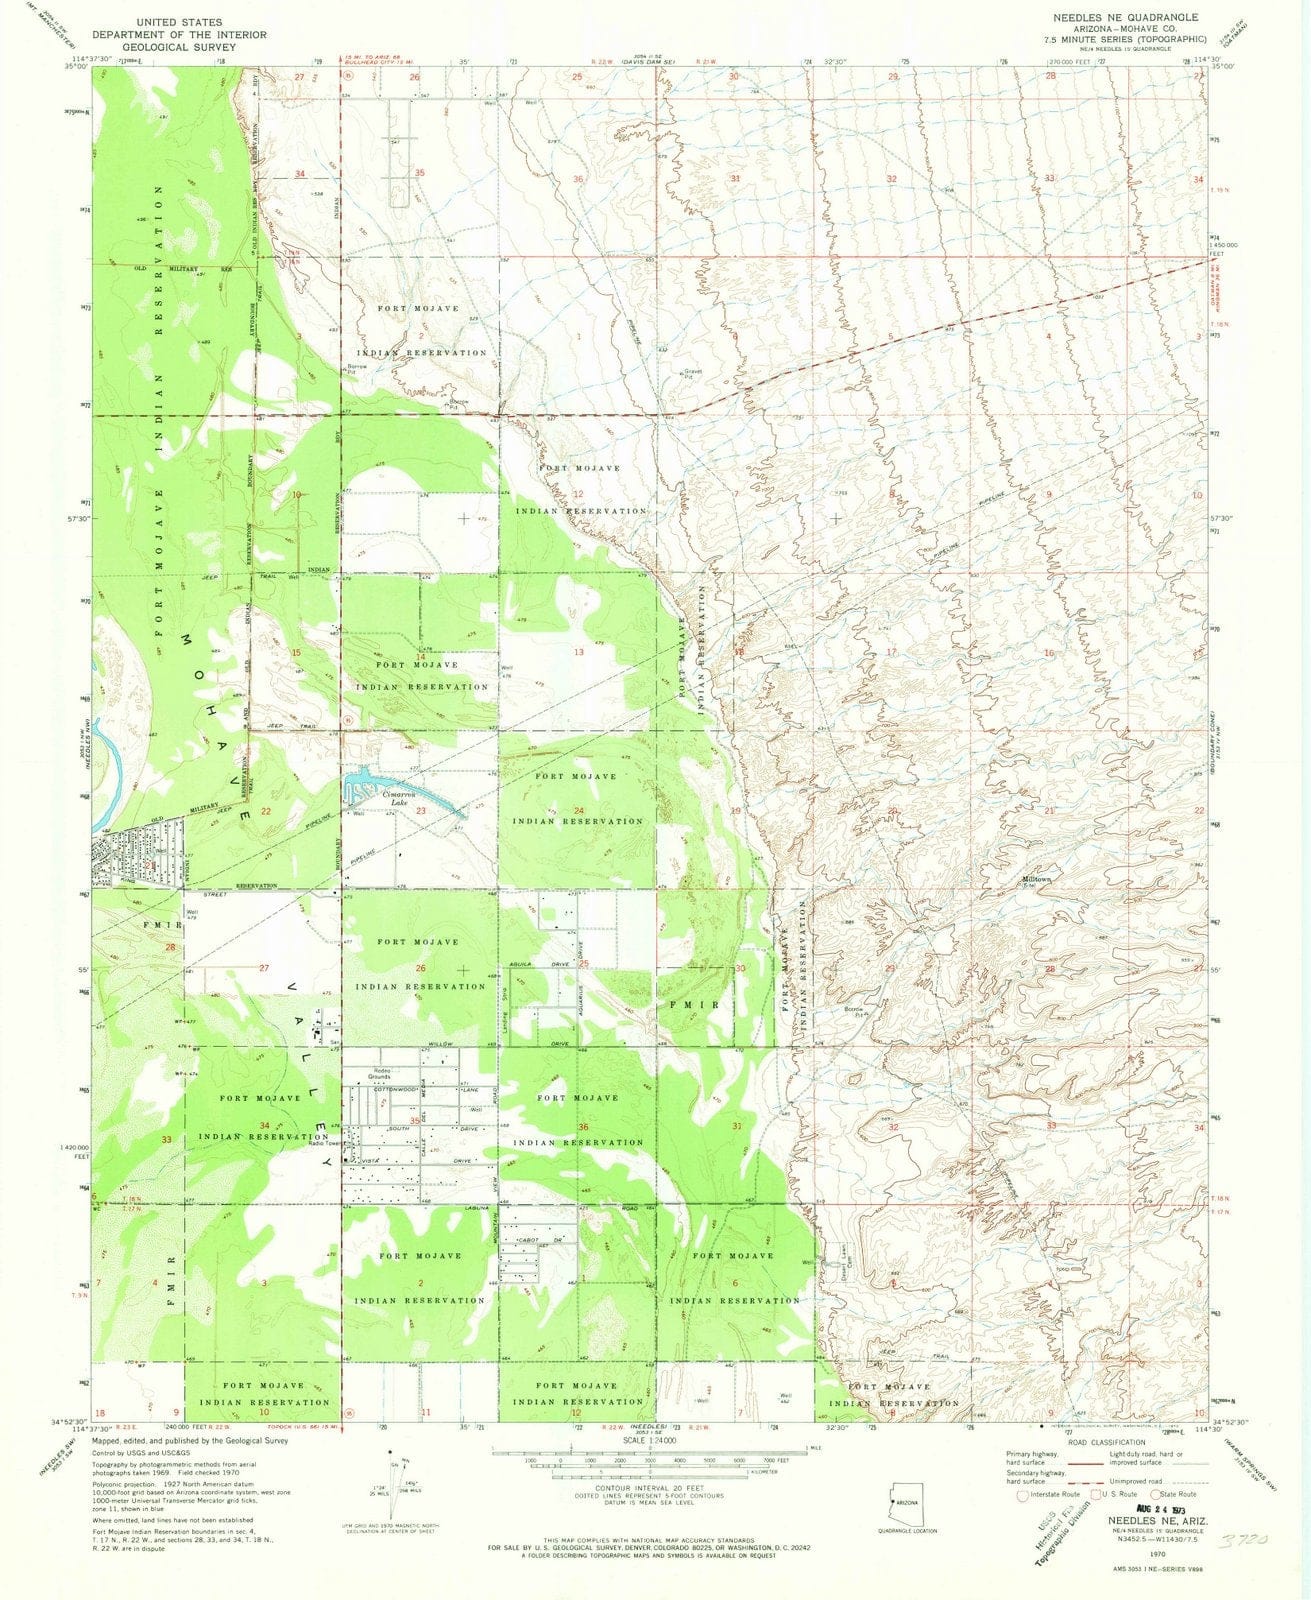 1970 Needles, AZ - Arizona - USGS Topographic Map